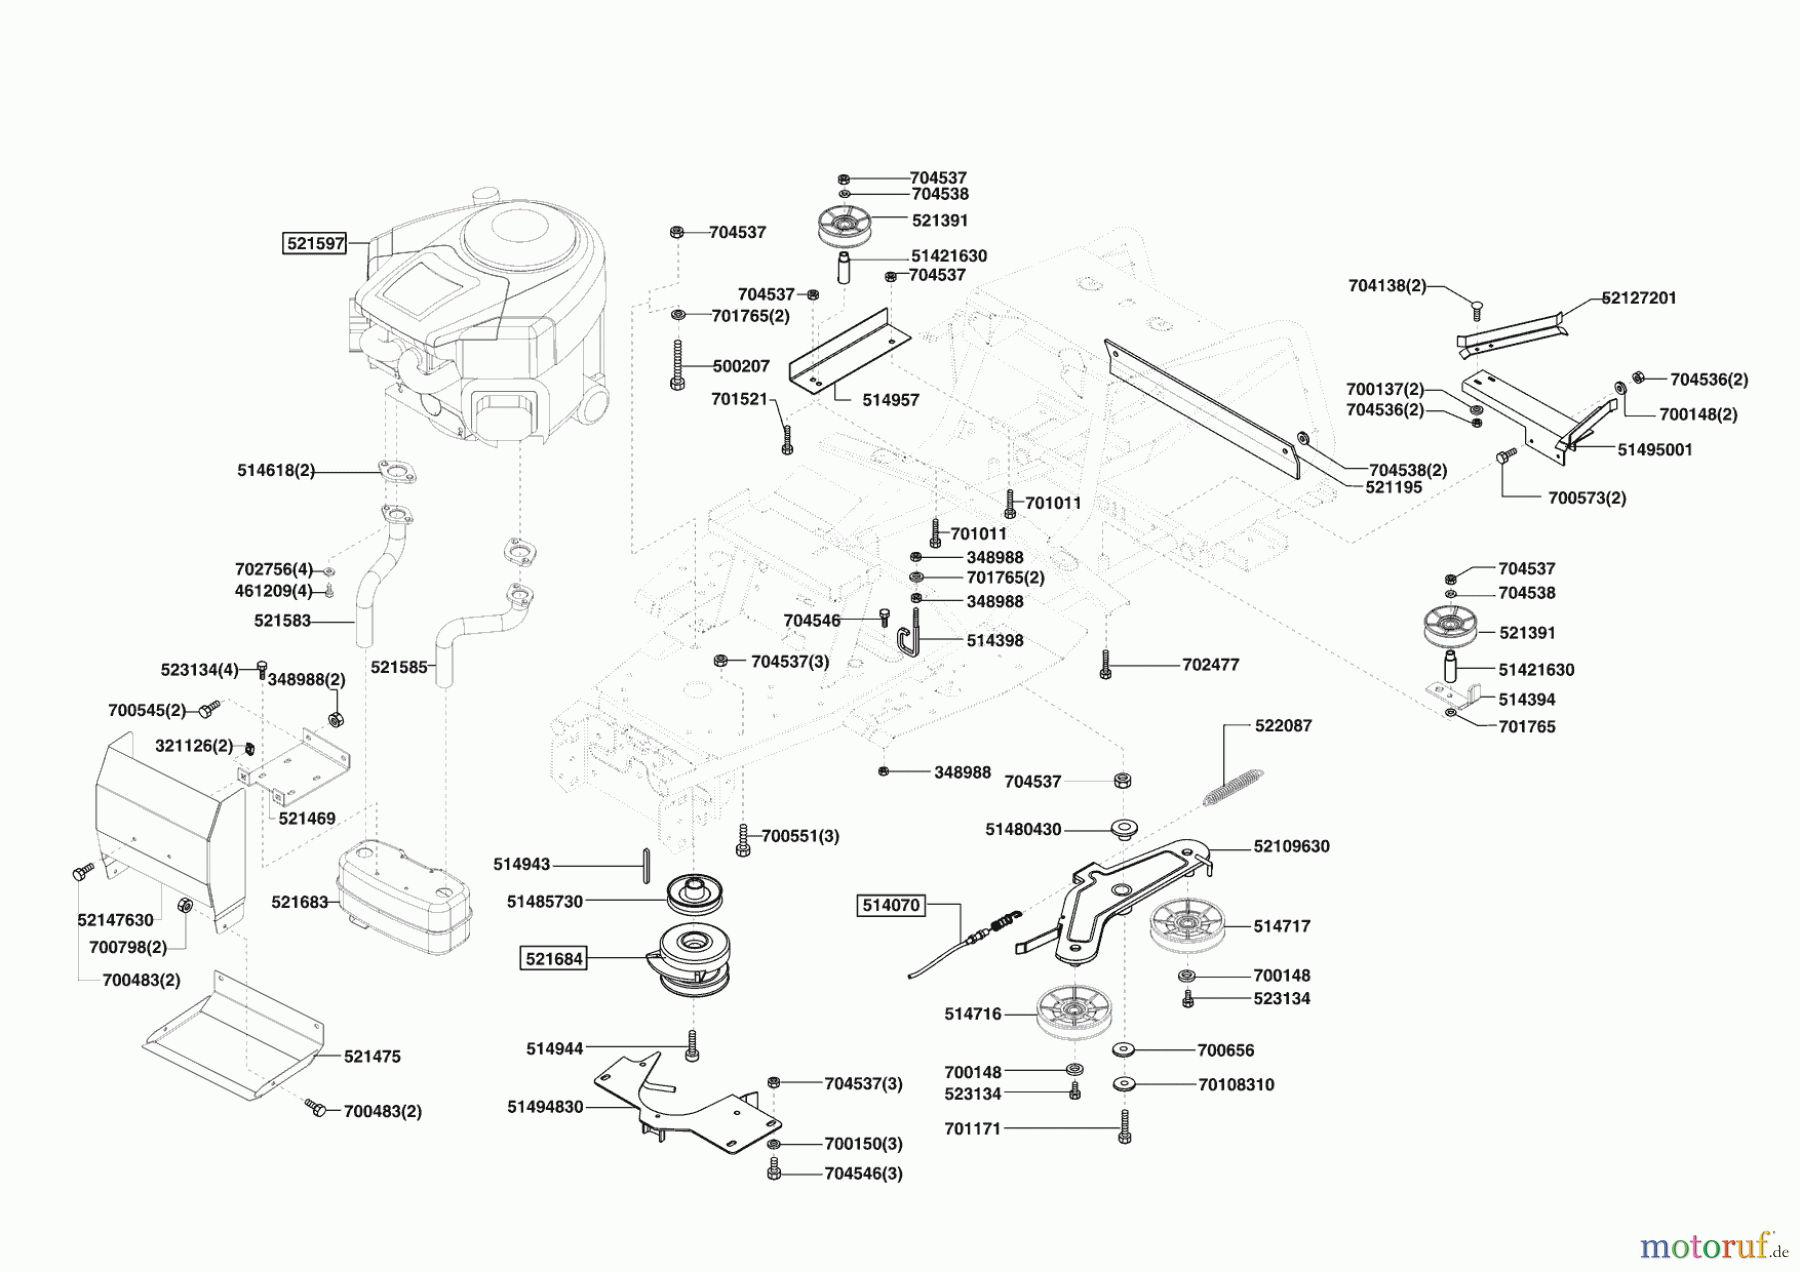  AL-KO Gartentechnik Rasentraktor T20-102 HDE TOBICO Seite 4